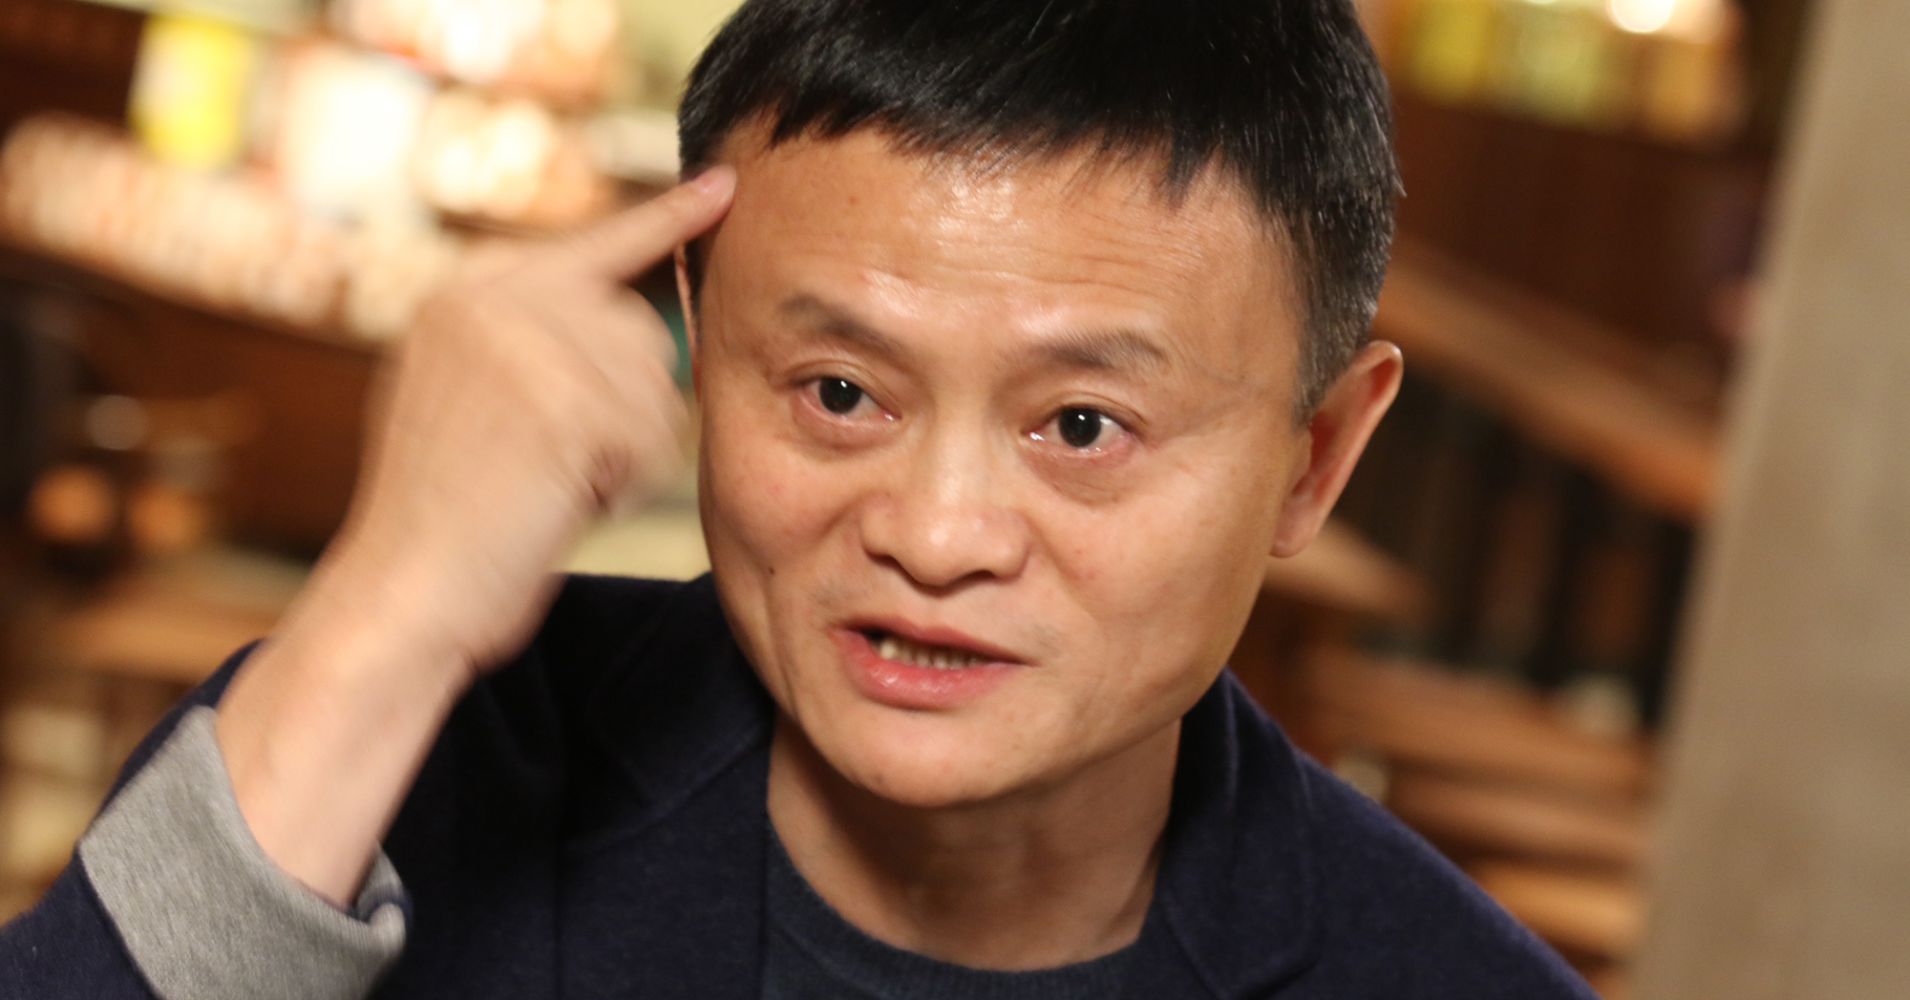 Chú Từ một thầy giáo dạy tiếng Anh, Jack Ma chuyển sang cùng một số người sáng lập công ty Alibaba và đưa nó trở thành một công ty công nghệ khổng lồ. Ảnh: TL